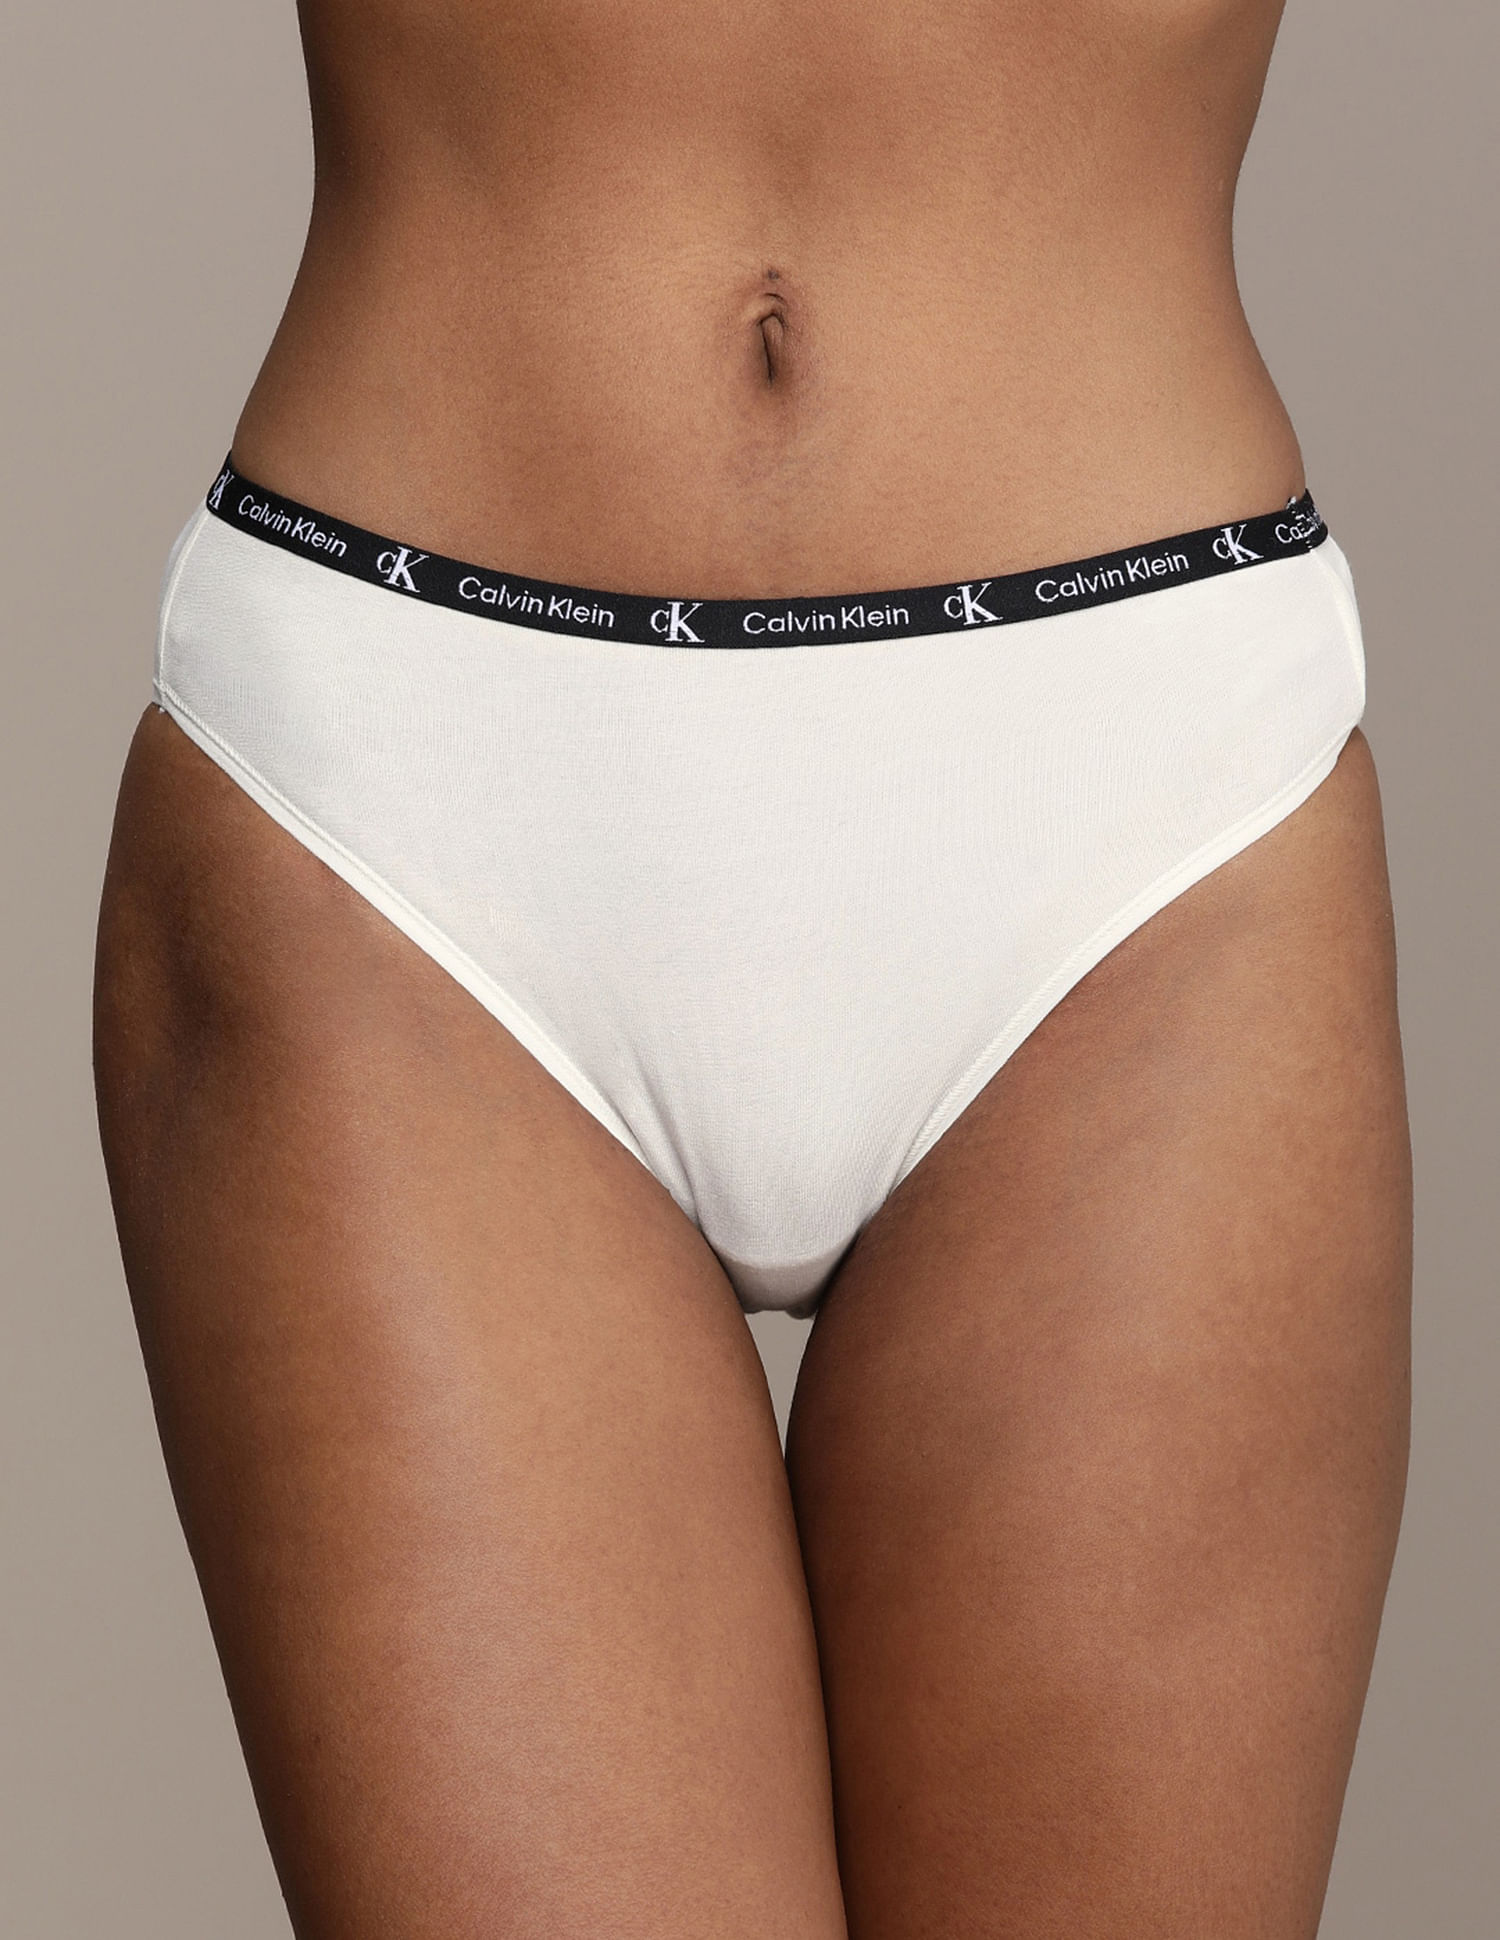 Buy Calvin Klein Underwear Mid Rise Solid Bikini Panties - Pack Of 6 